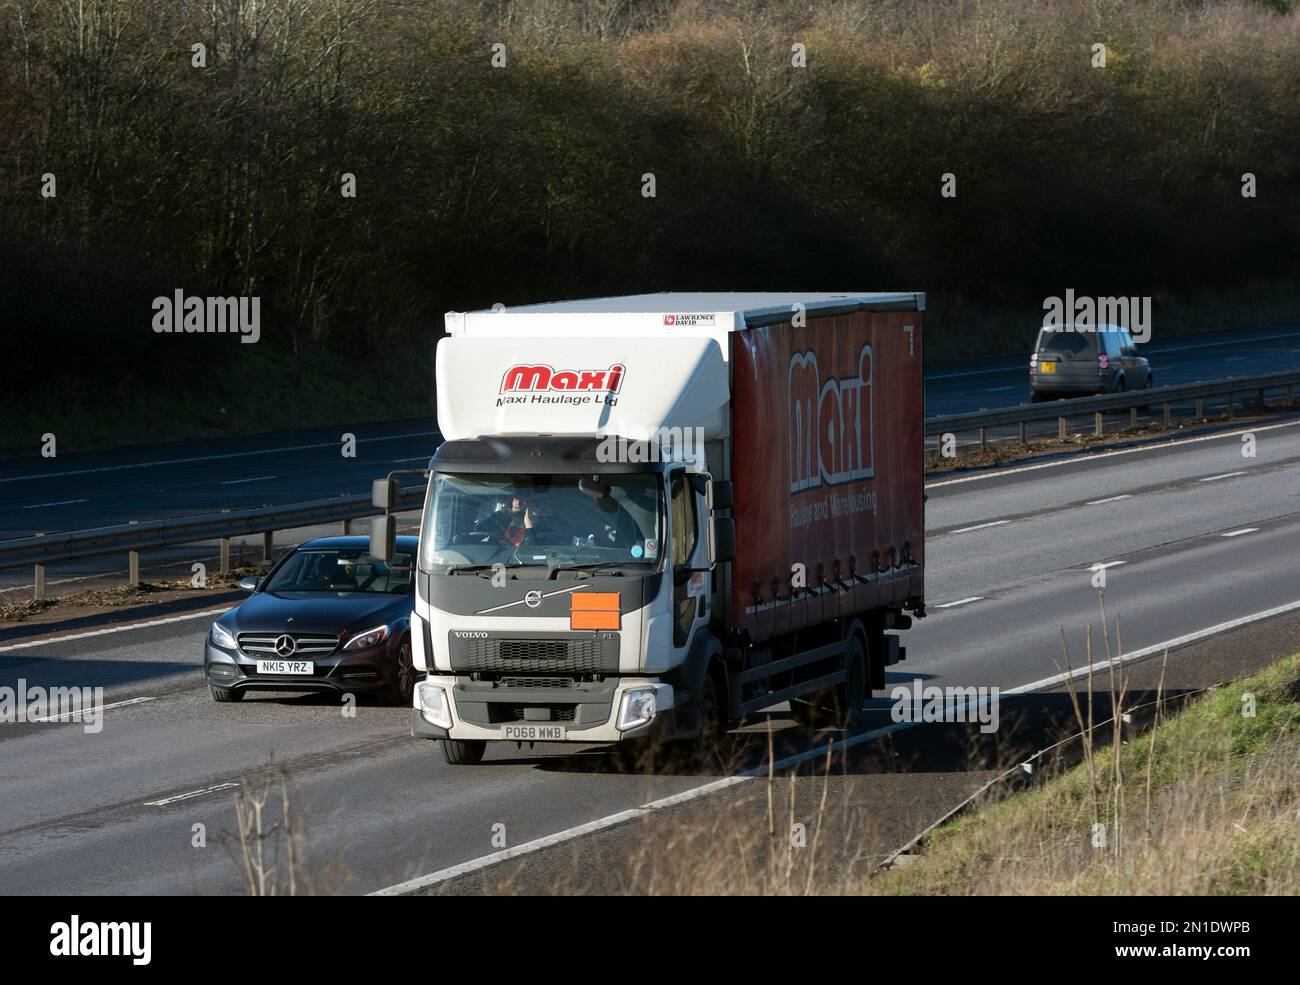 Camión Maxi Haulage en la autopista M40, Warwickshire, Reino Unido Foto de stock